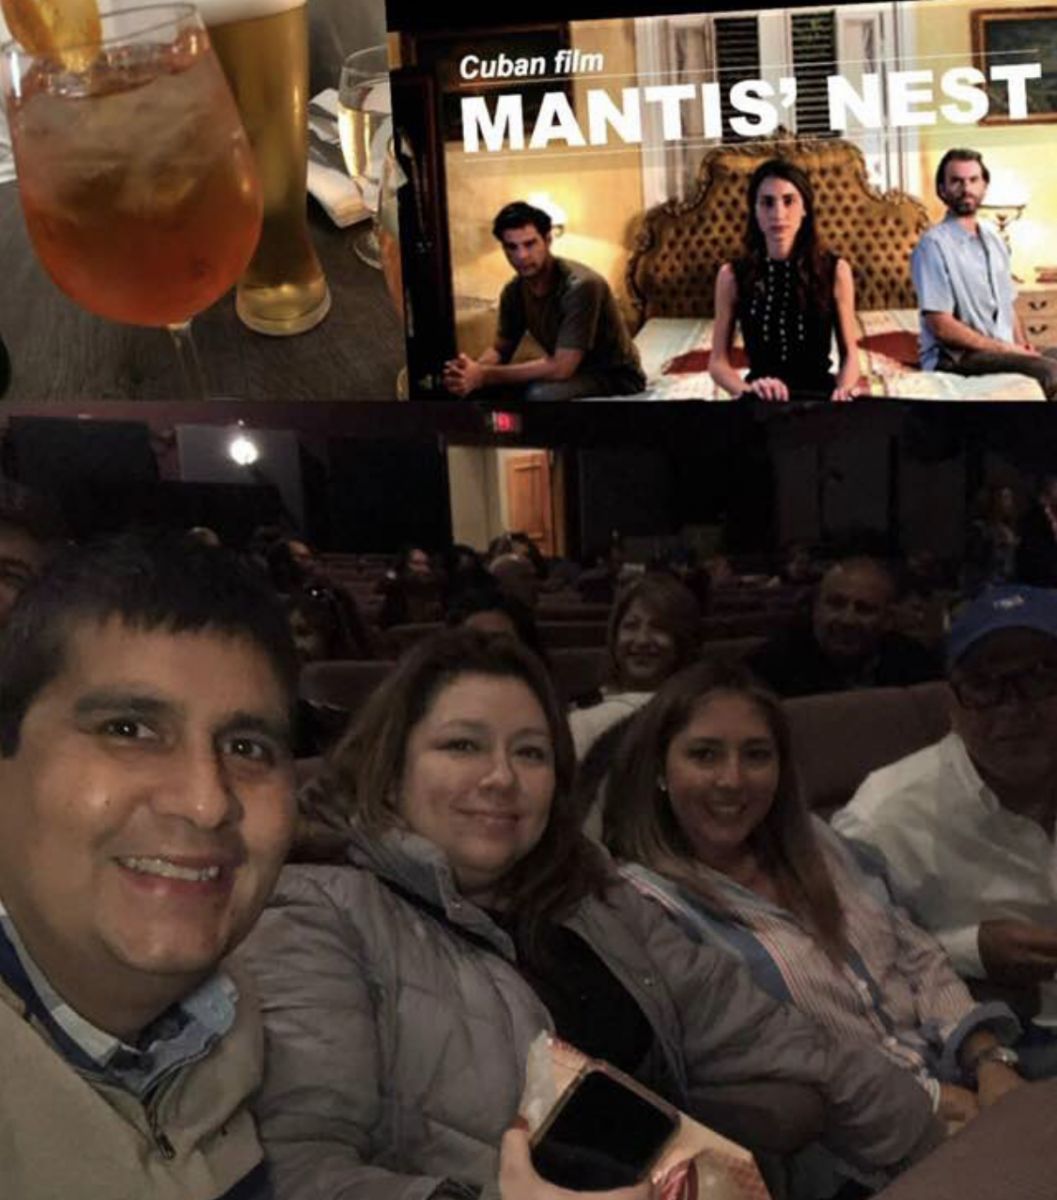 Estreno Cubano ¨Nido de Mantis¨ en festival de cine en Toronto